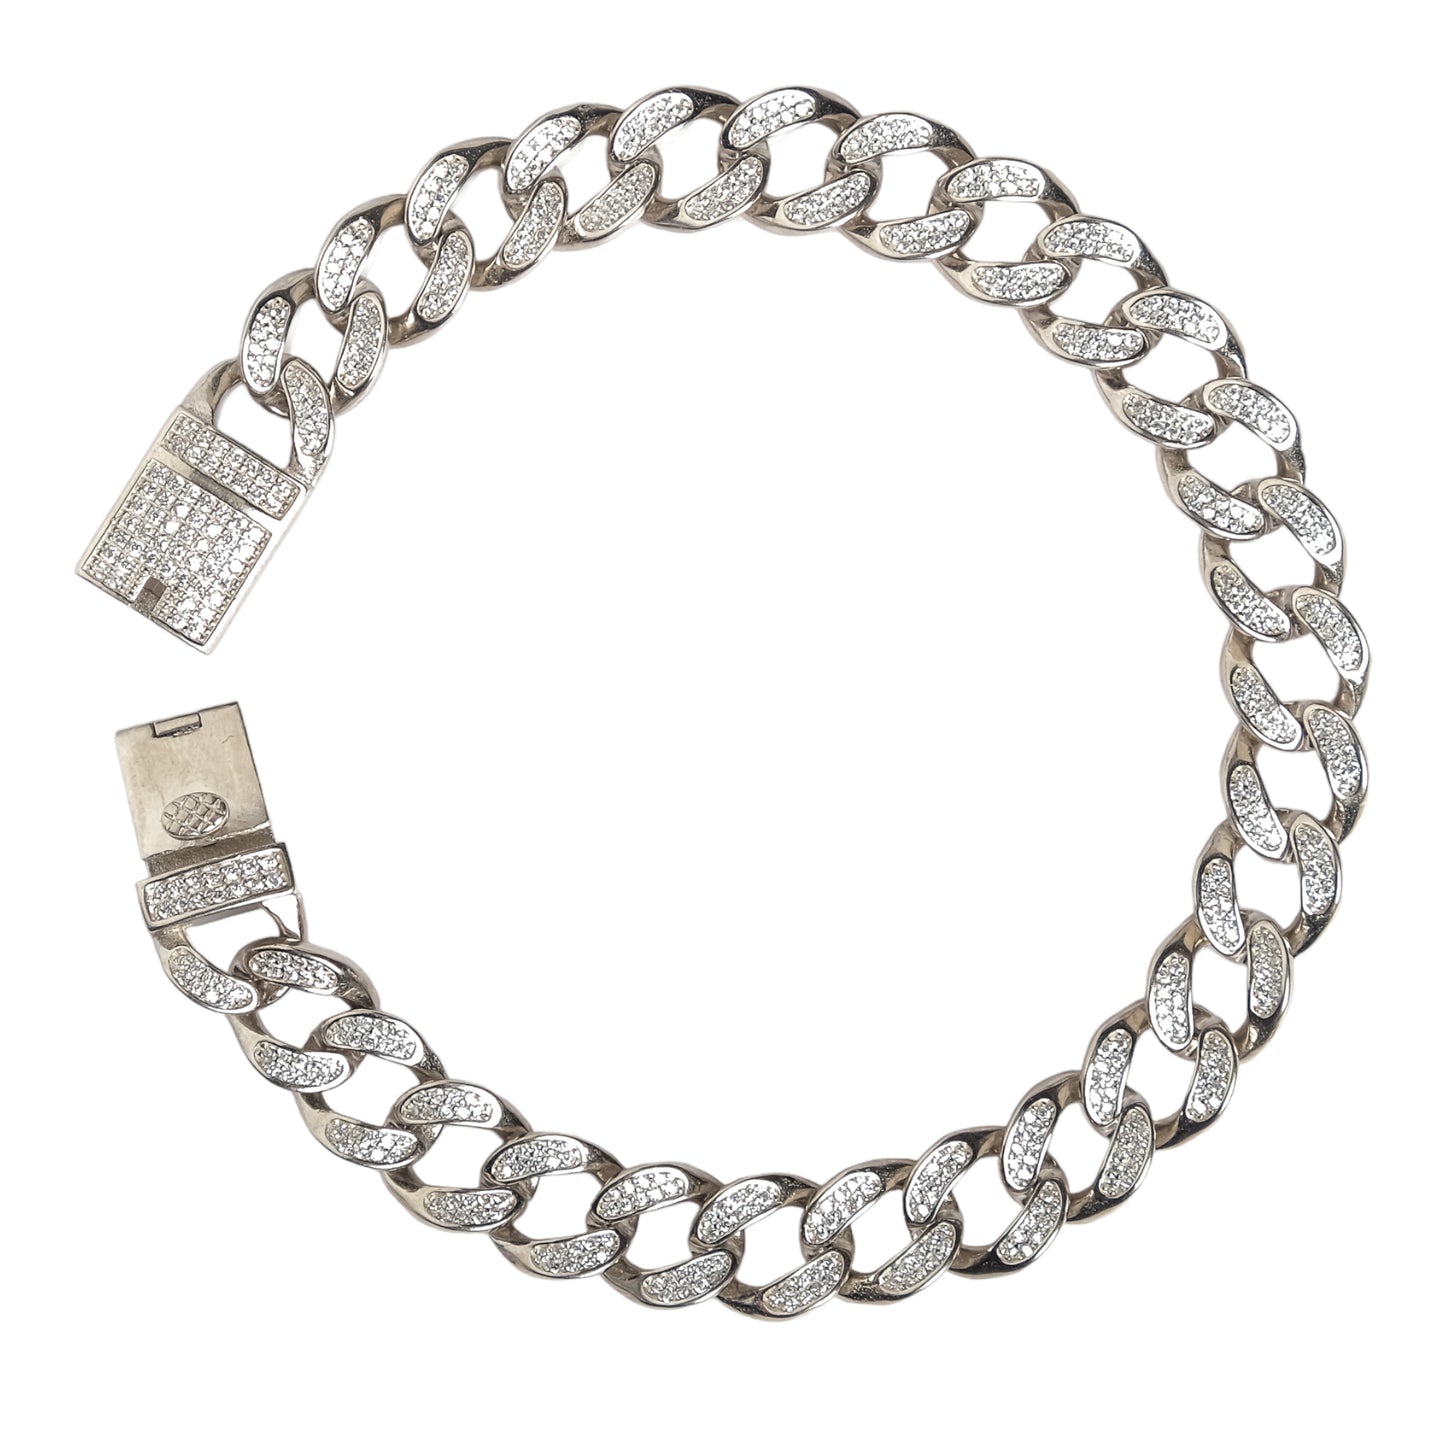 Halukakah Bling Unisex Silver Bracelet